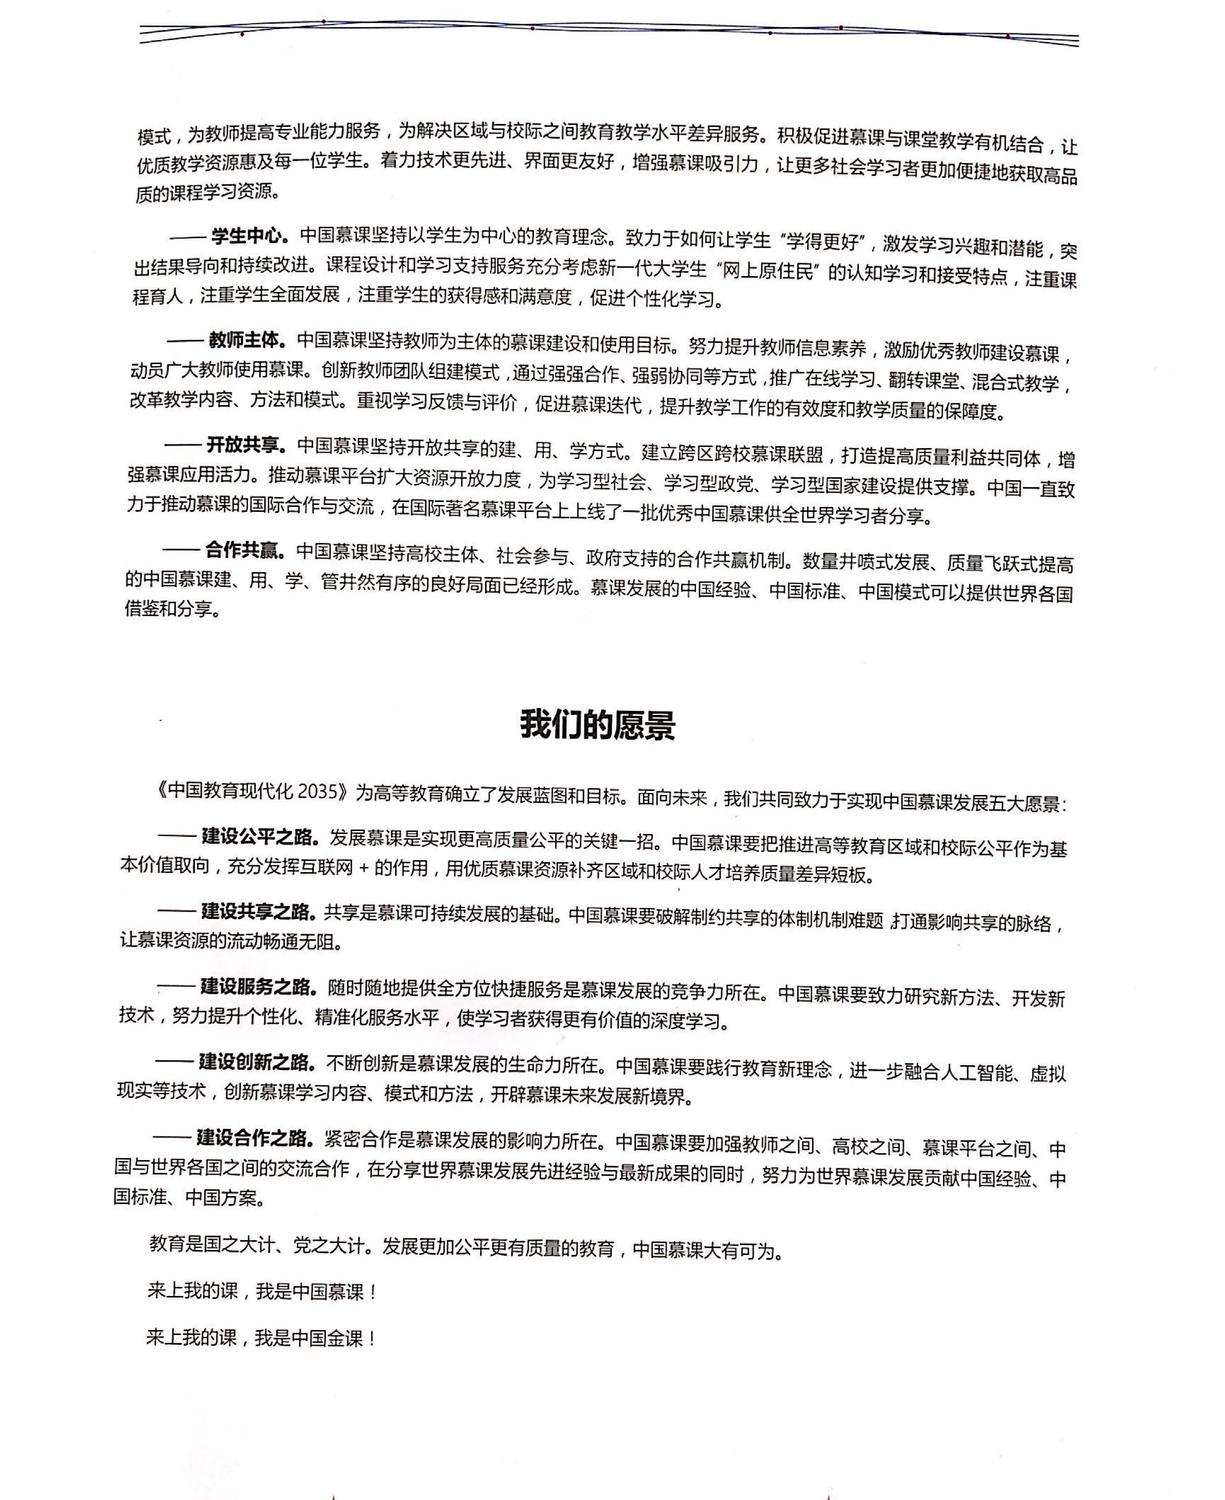 中国慕课行动宣言2_页面_2.jpg